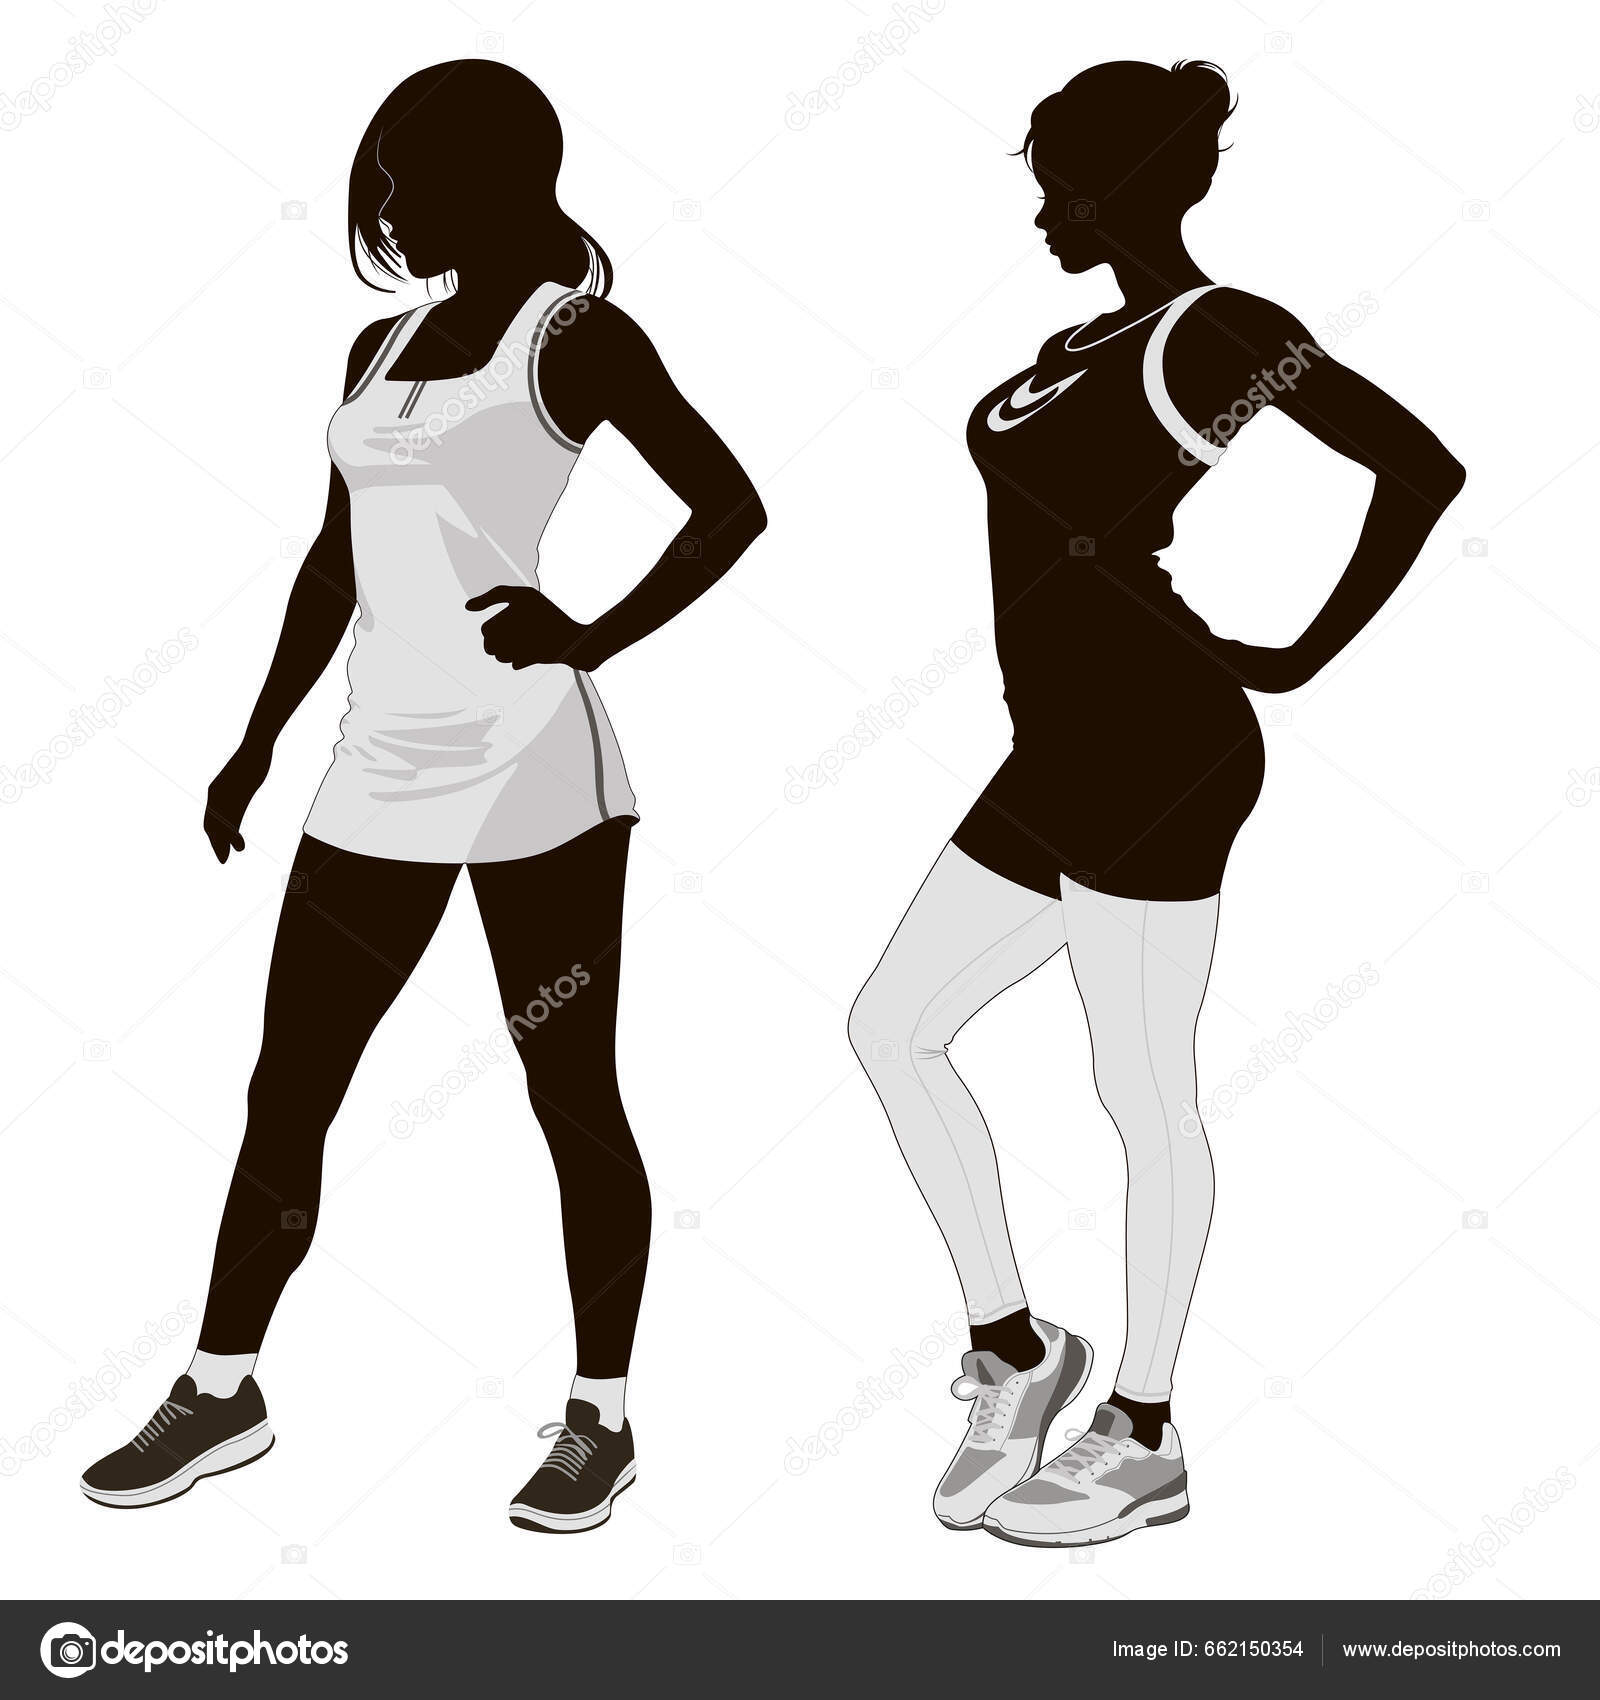 https://st5.depositphotos.com/4278371/66215/v/1600/depositphotos_662150354-stock-illustration-silhouette-athletic-woman-black-white.jpg